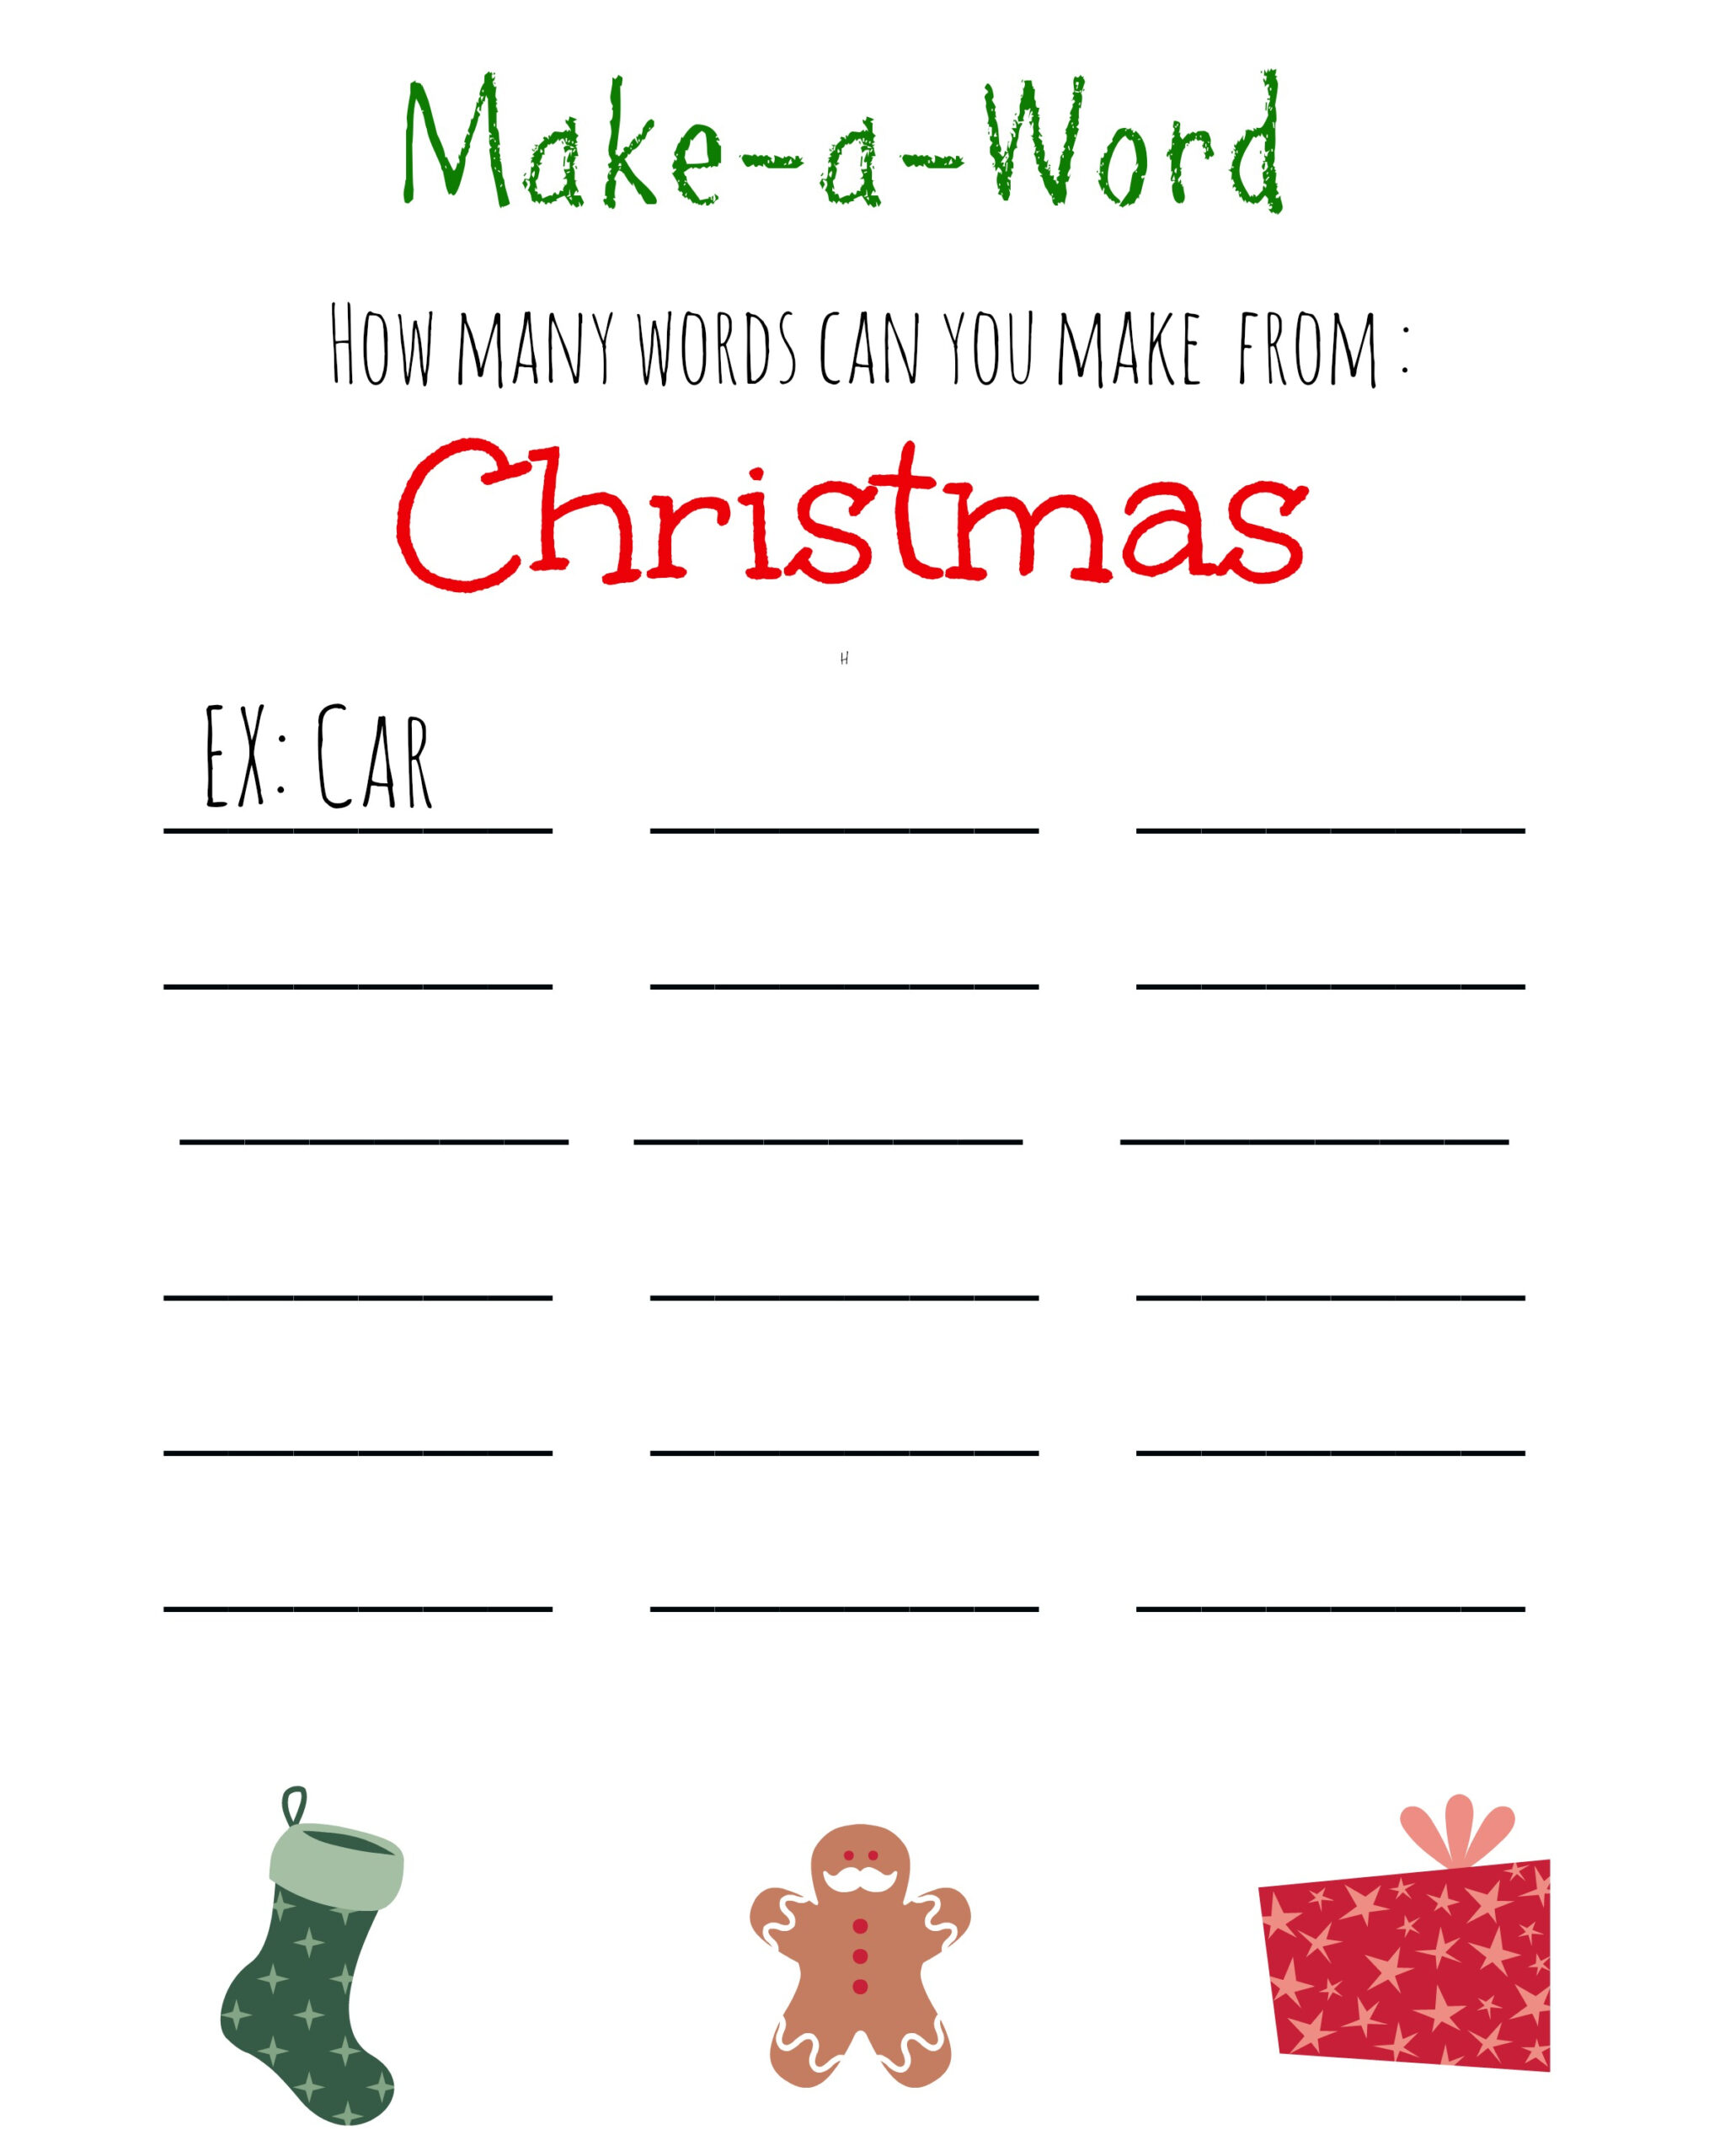 Christmas Make-A-Word {Free Printable} - Free Printable Holiday Word Games